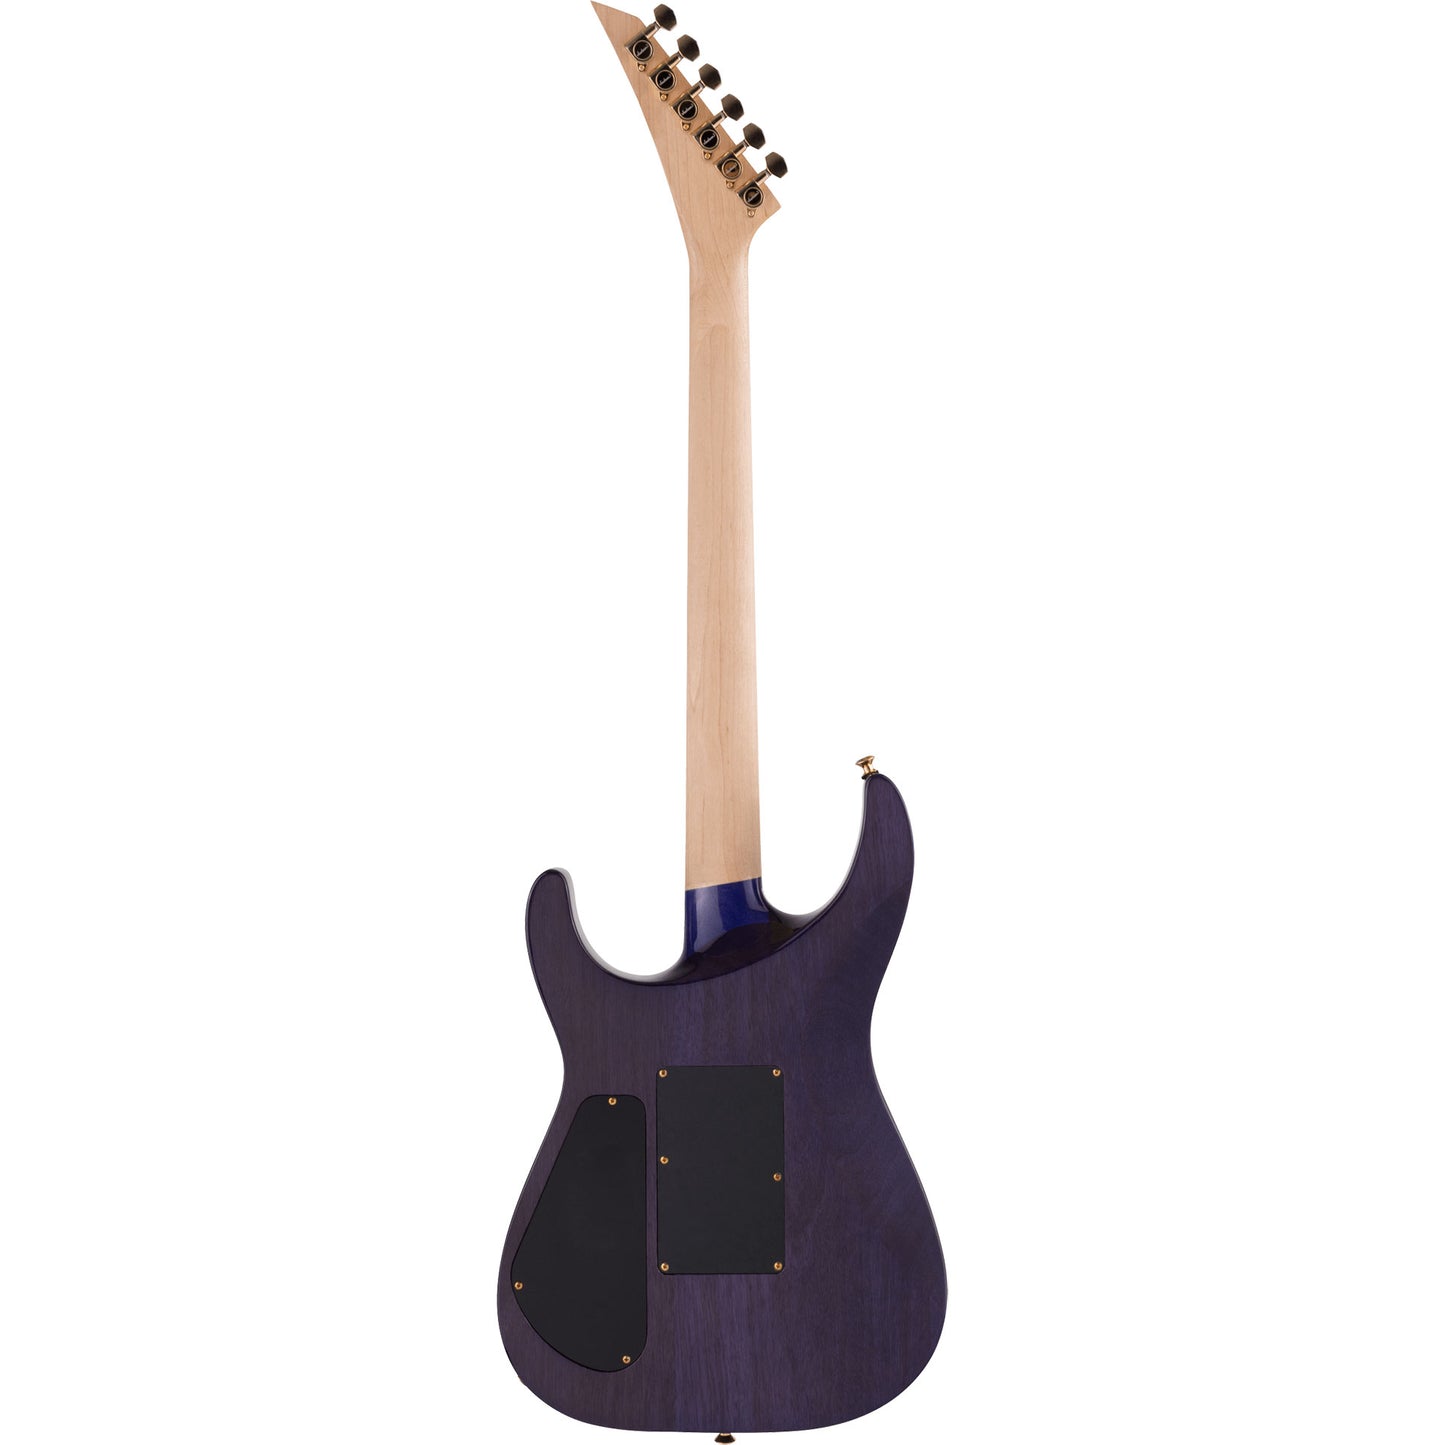 Jackson Pro Series Soloist™ SL2Q MAH Electric Guitar, Transparent Purple